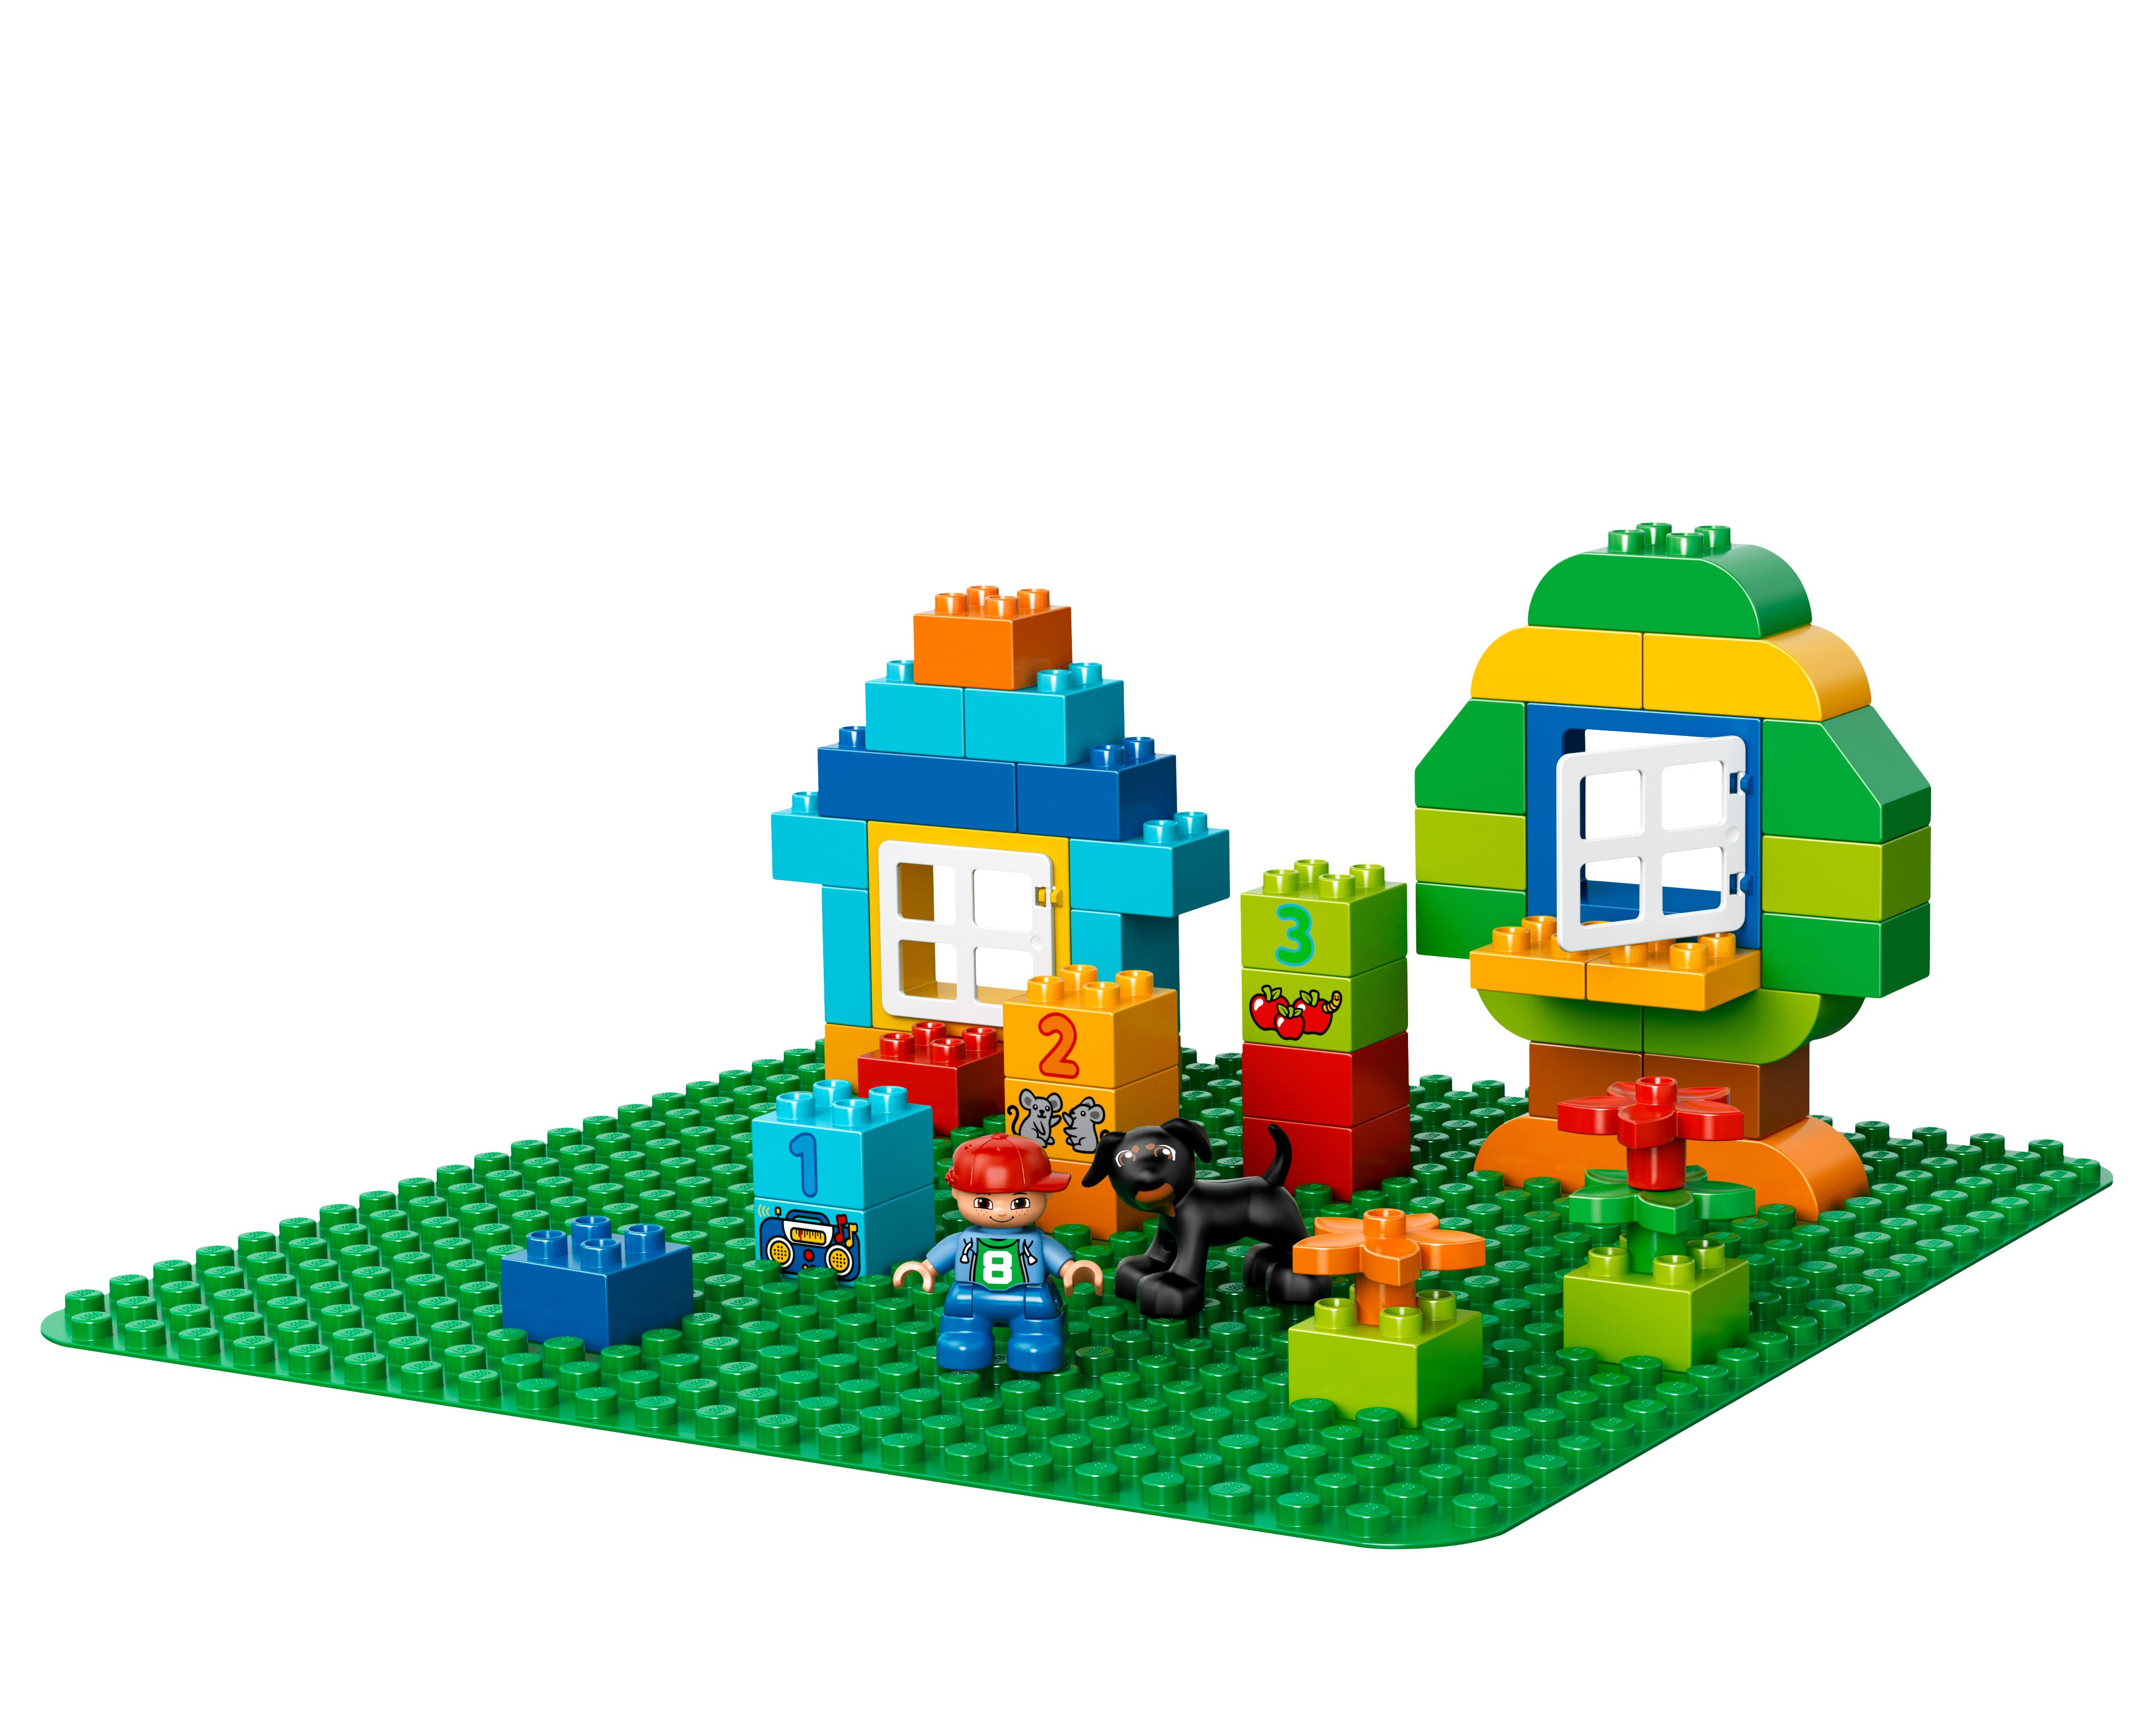 LEGO® DUPLO® Große Bauplatte, grün 2304